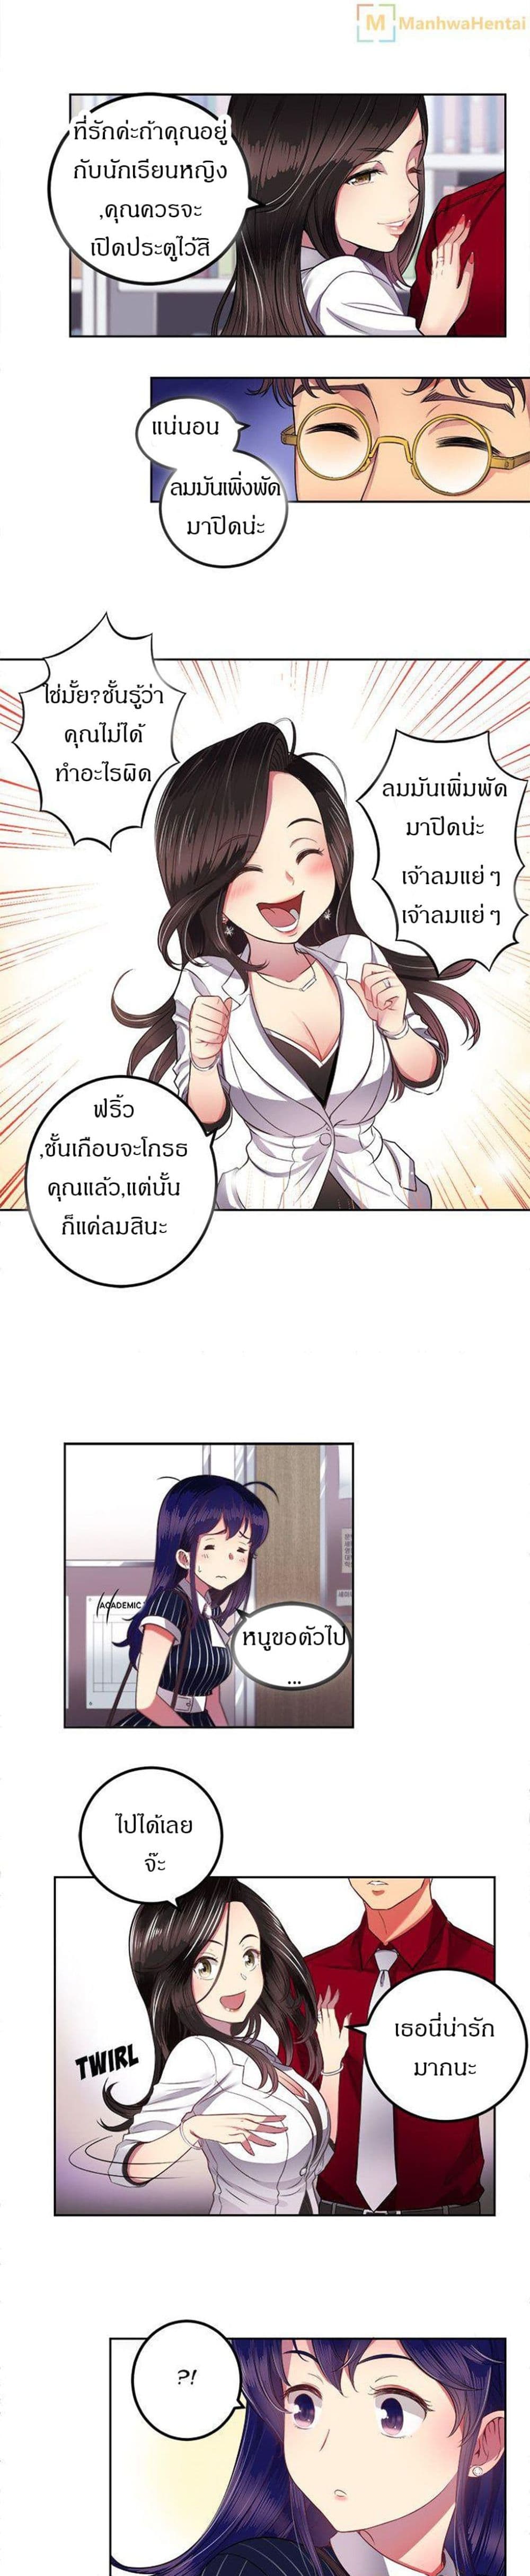 Yuri’s Part Time Job 3 (10)